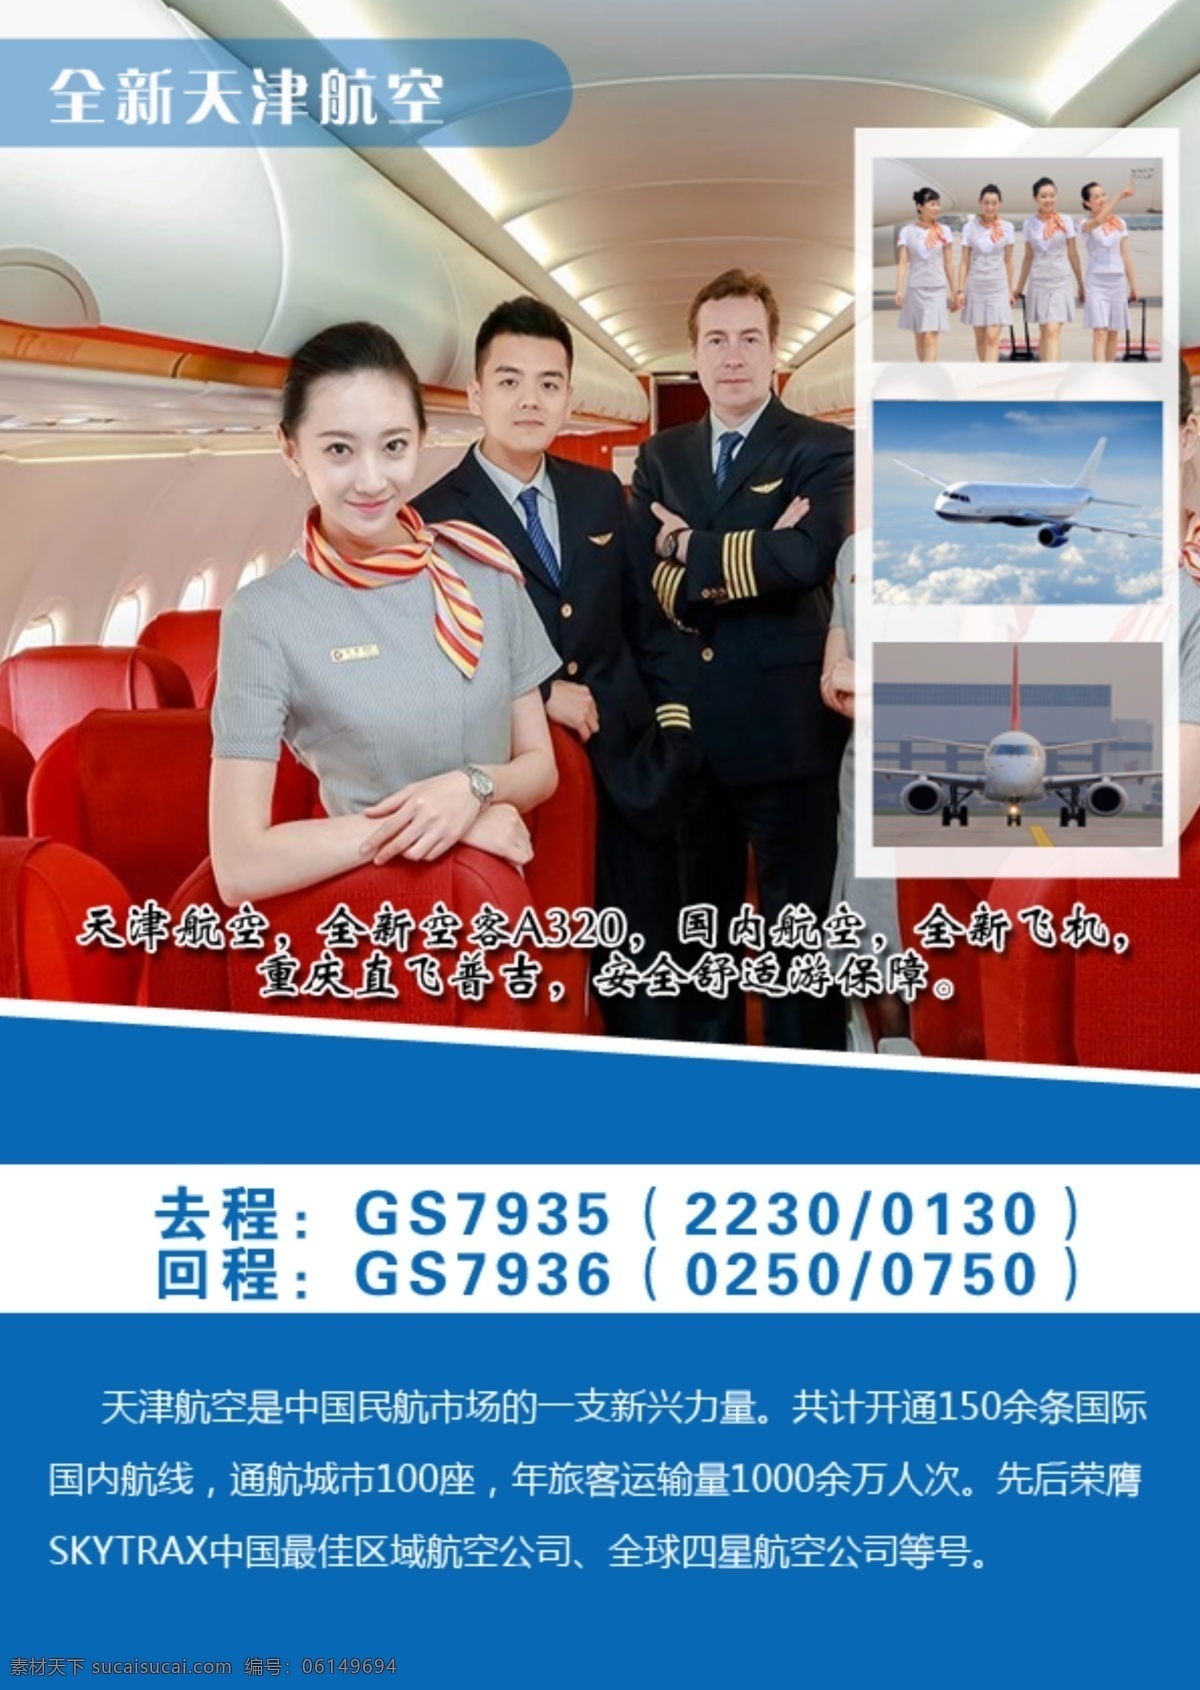 航空公司 介绍 海报 航空 飞机 简介 公司 空姐 服务 背景素材 高清图片 蓝色